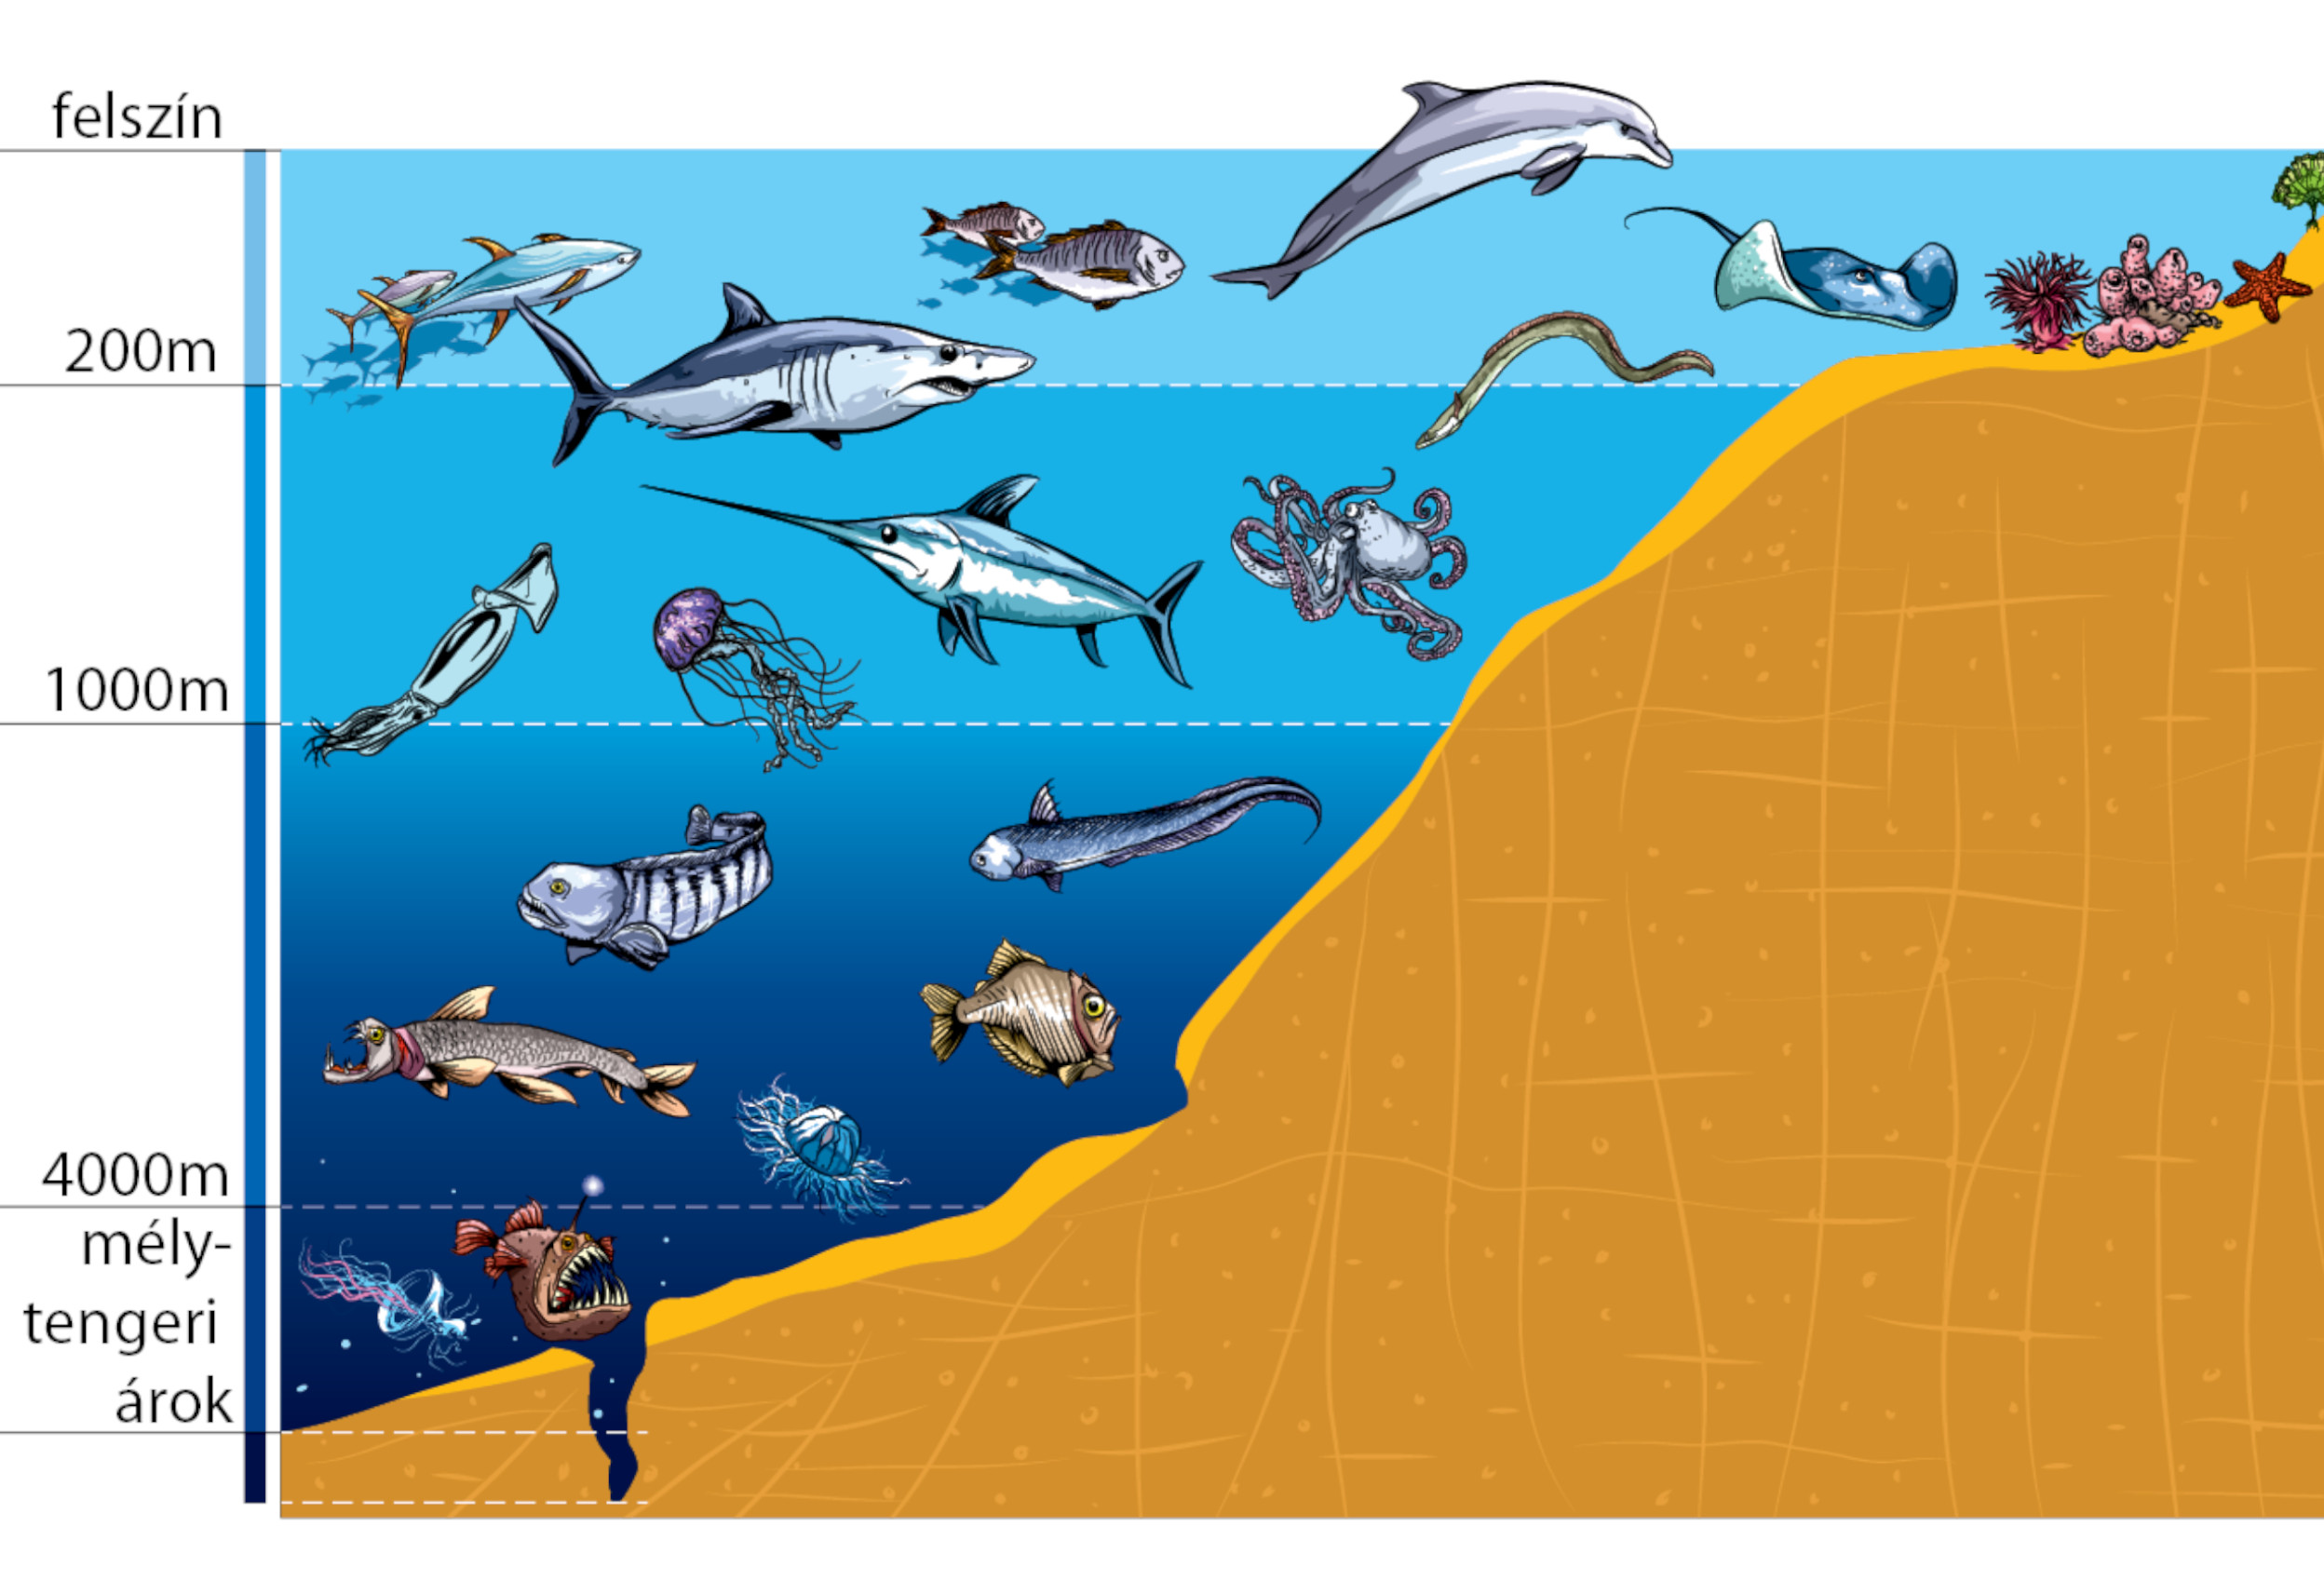 Наибольшее количество организмов сосредоточено. Зоны океана. Обитатели моря по глубине. Обитатели океана на разной глубине. Зоны обитания в океане.